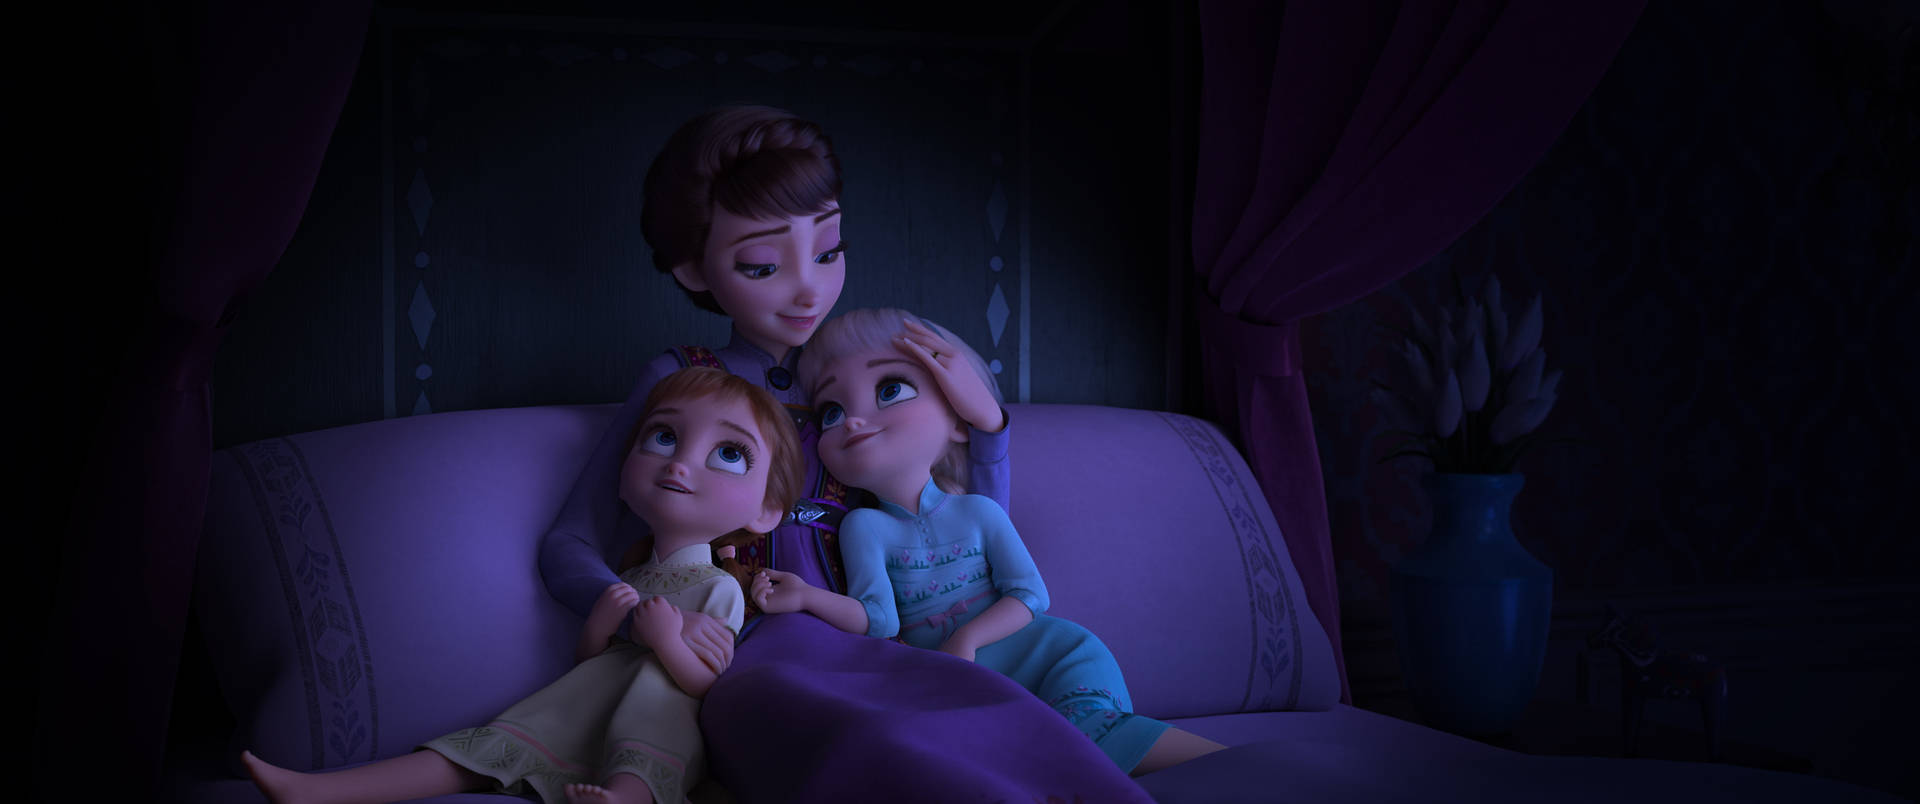 A heartwarming moment between Elsa, Anna, and their mother Iduna Wallpaper